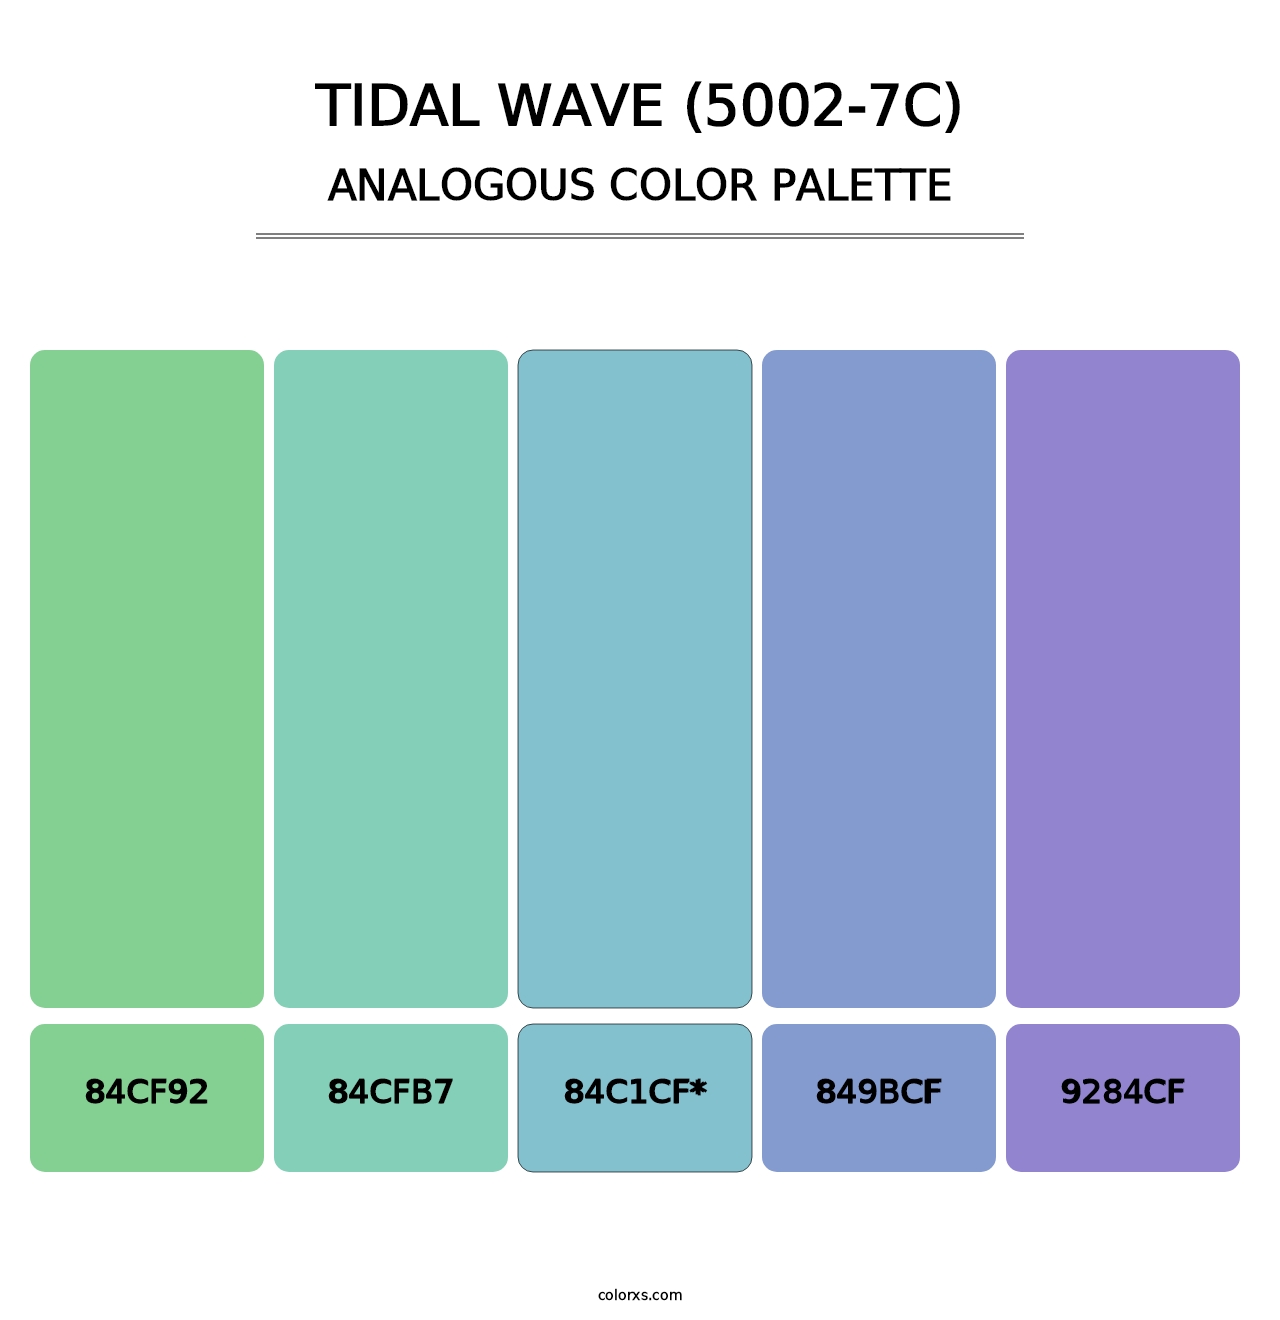 Tidal Wave (5002-7C) - Analogous Color Palette